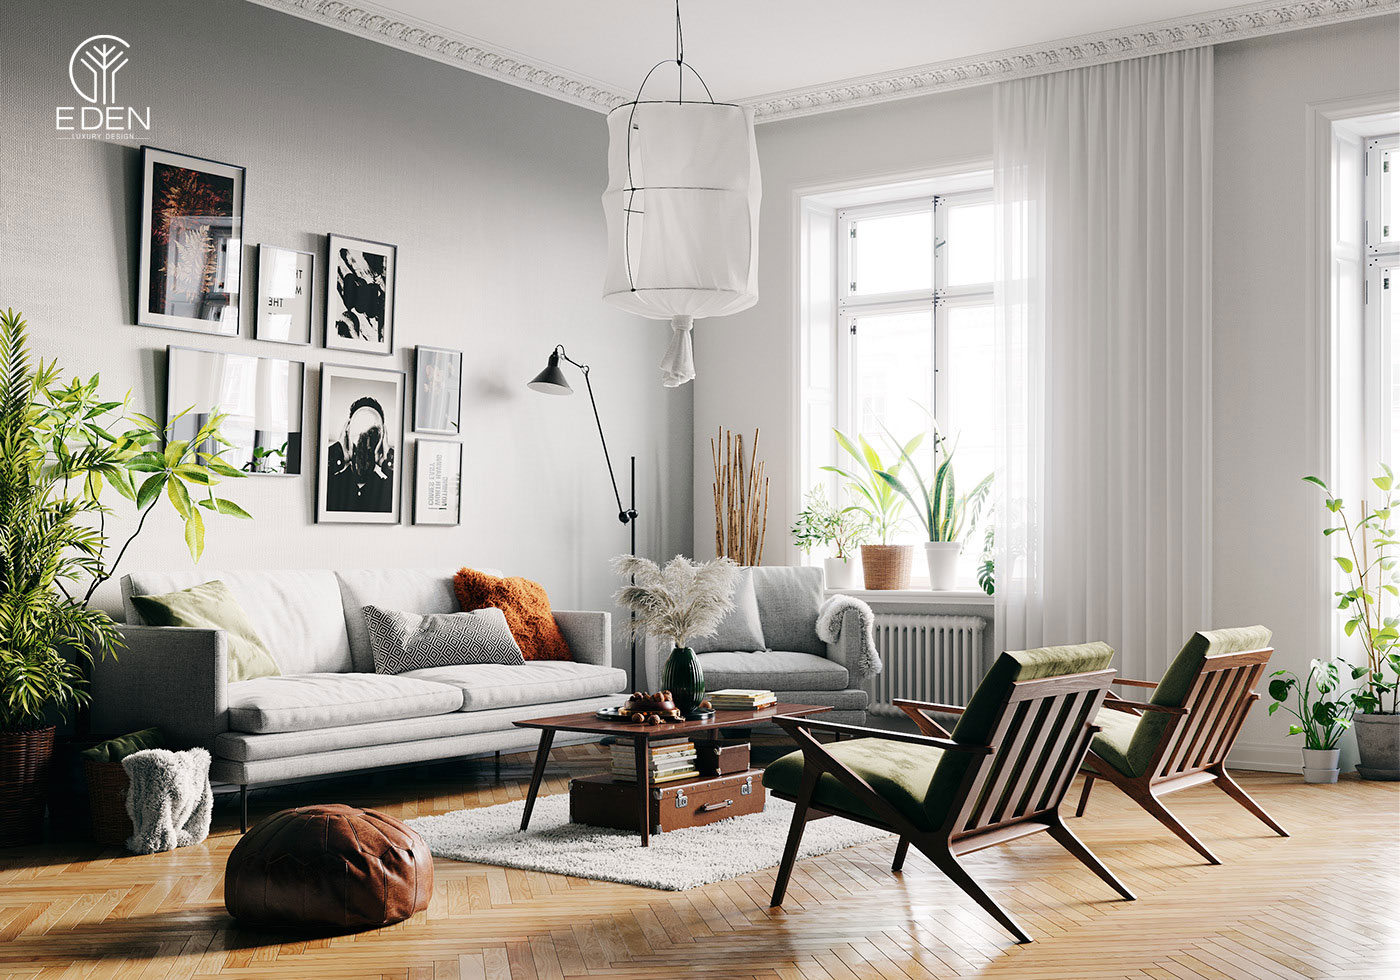 Thiết kế nội thất chung cư theo phong cách Scandinavian (Bắc âu) mẫu 1